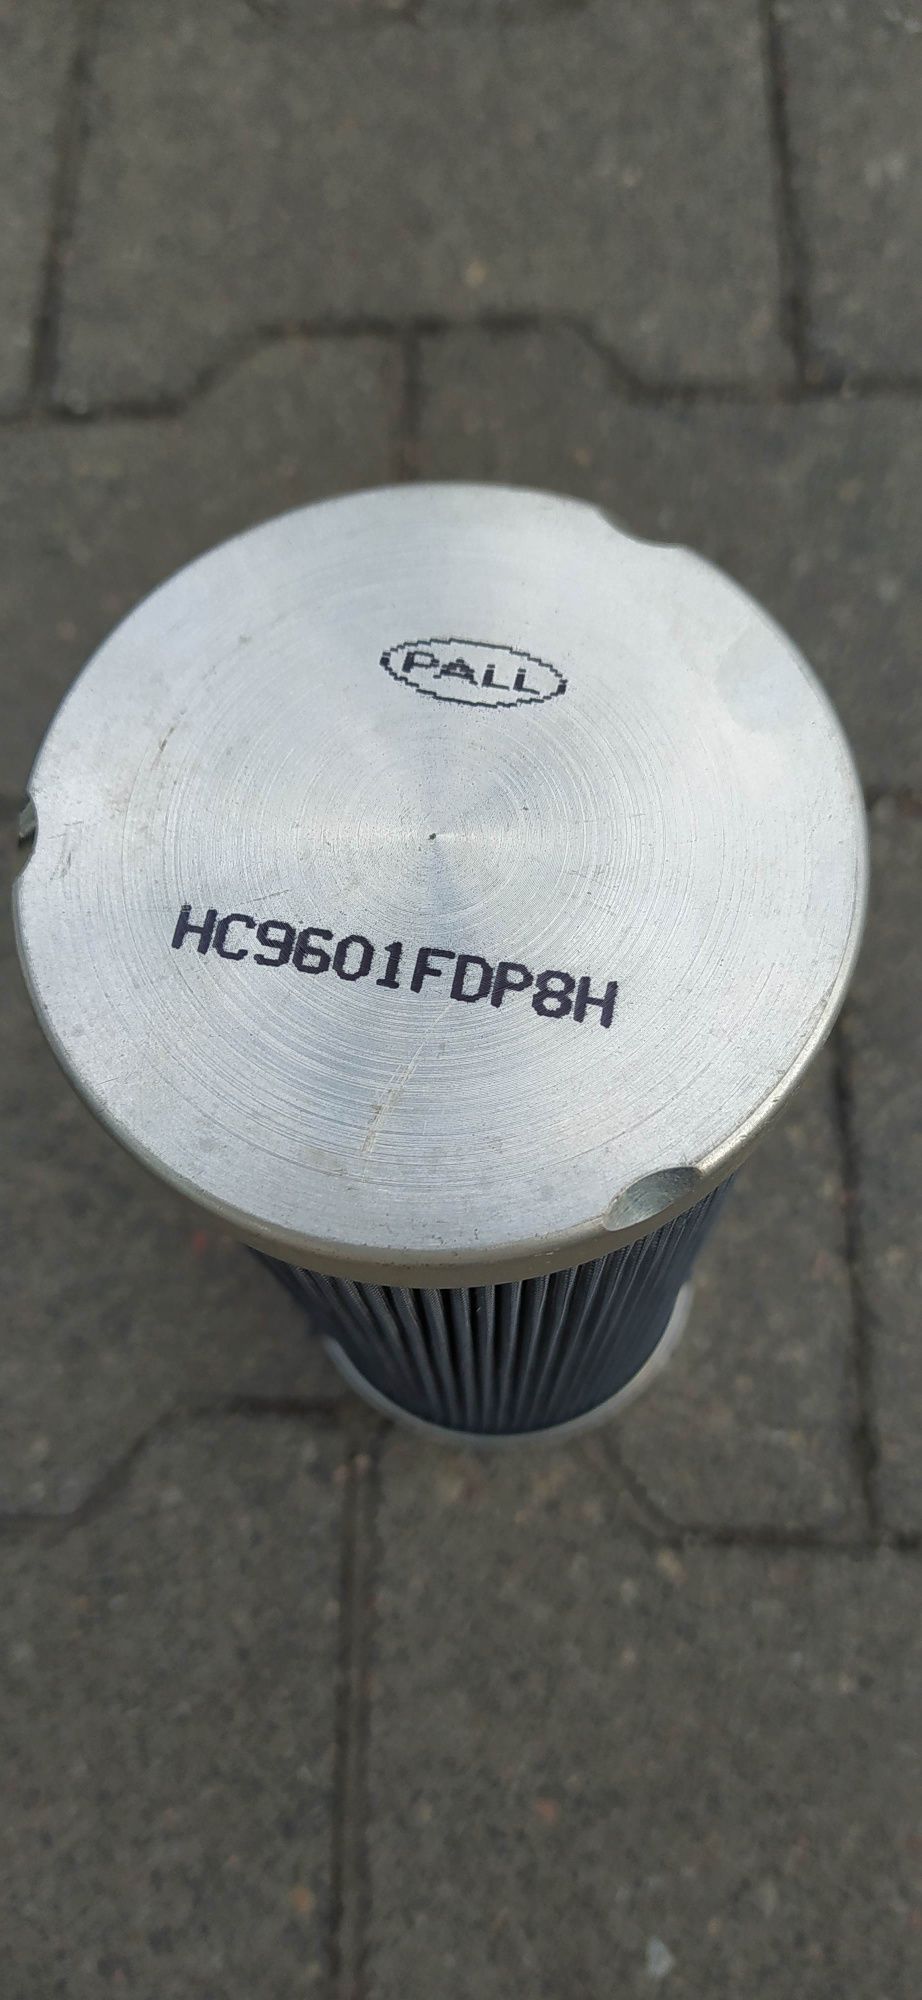 Filtr hydrauliczny wkład Pall HC9601FDP 8H